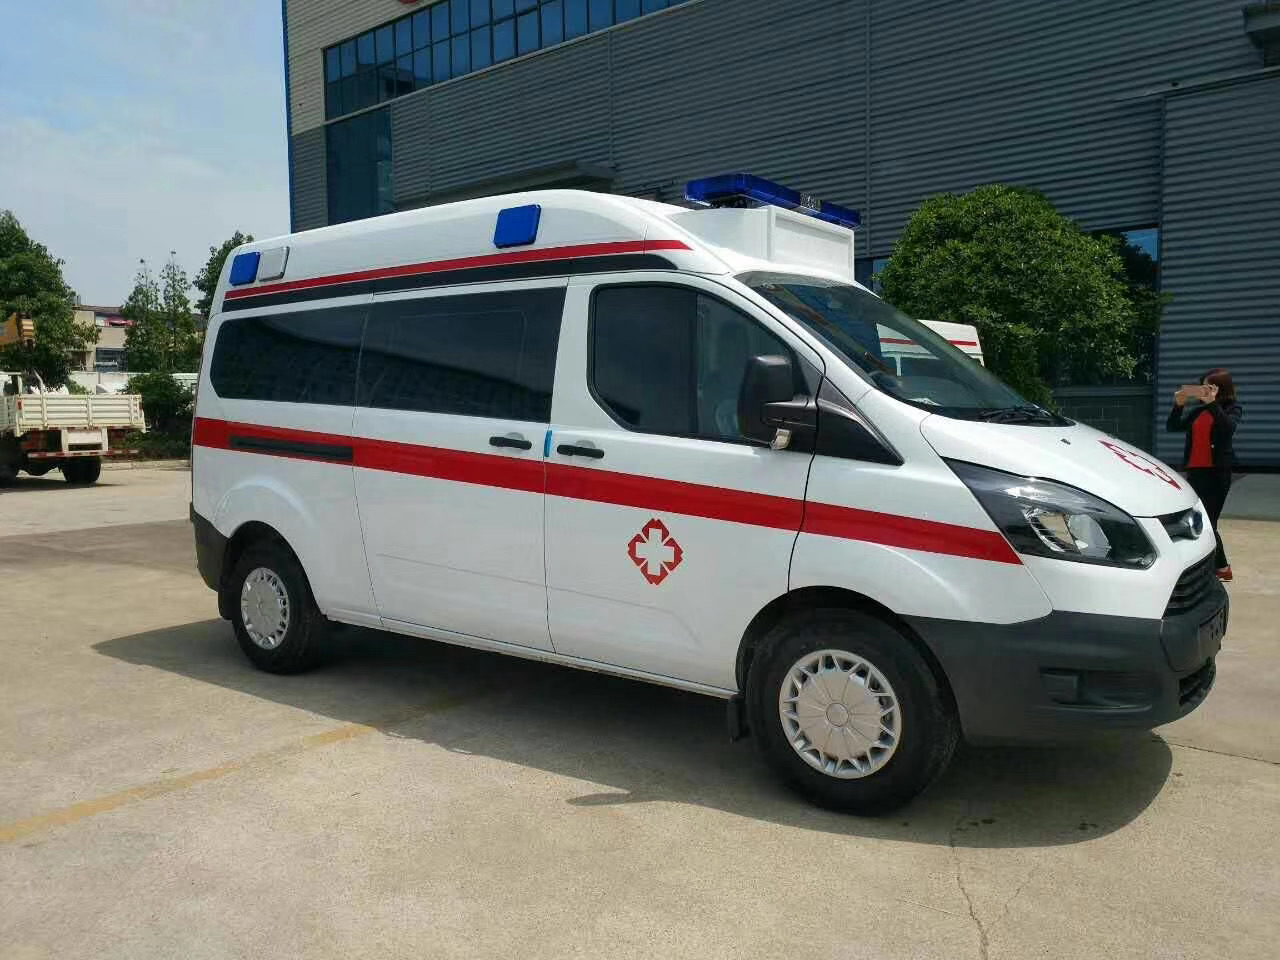 临朐县出院转院救护车